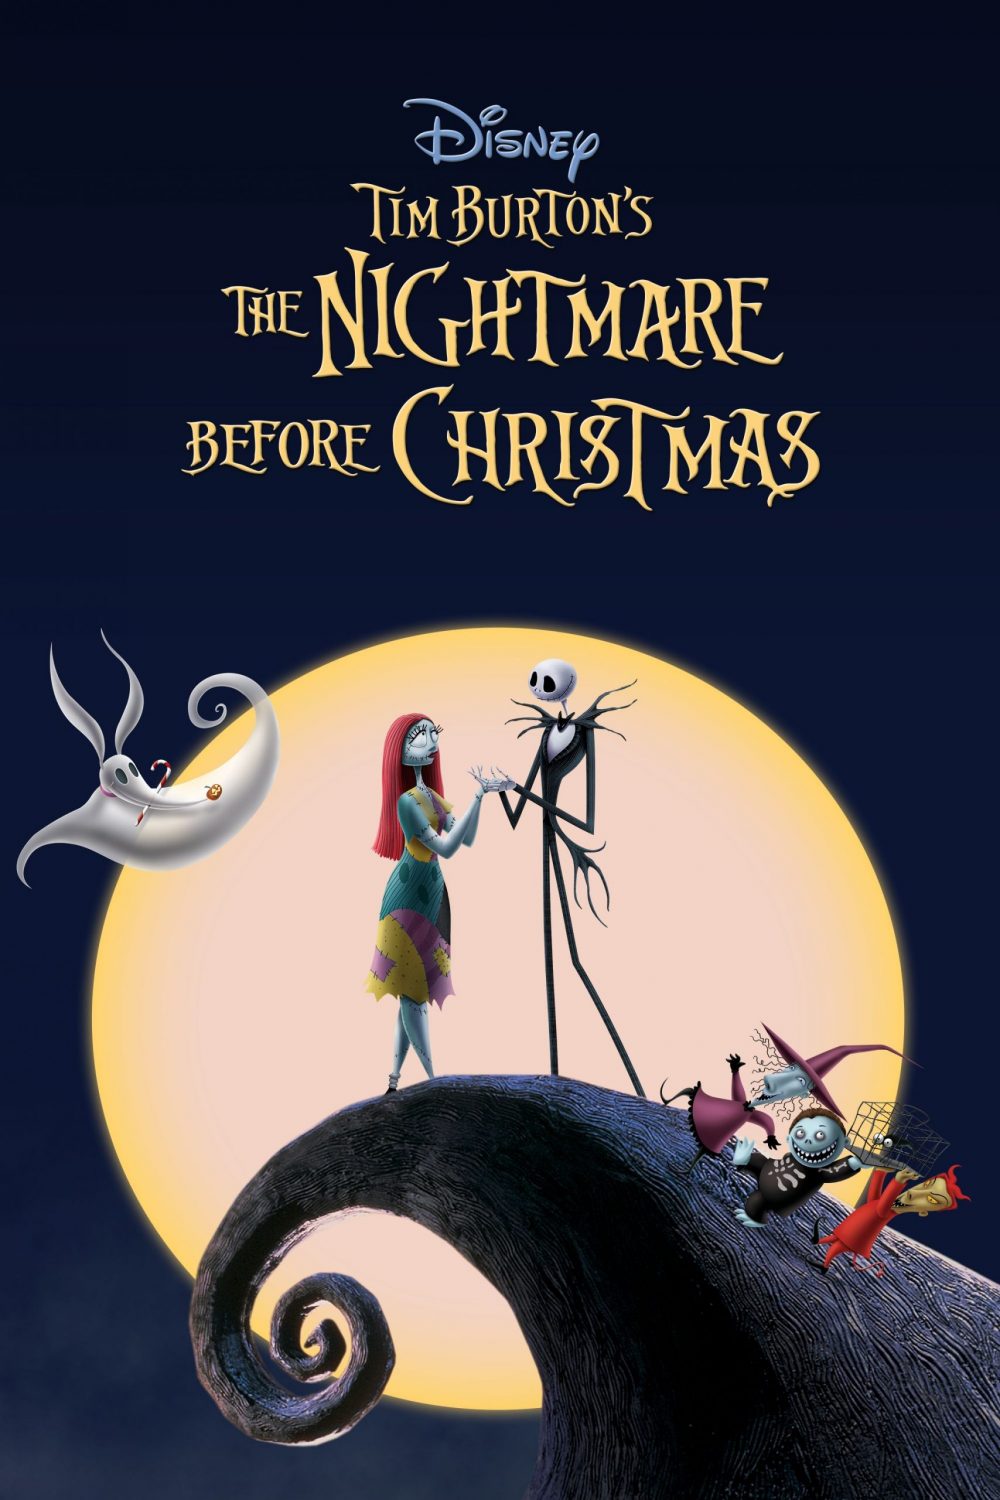 Những bộ phim hoạt hình về Giáng sinh hay nhất: Đêm kinh hoàng trước Giáng sinh